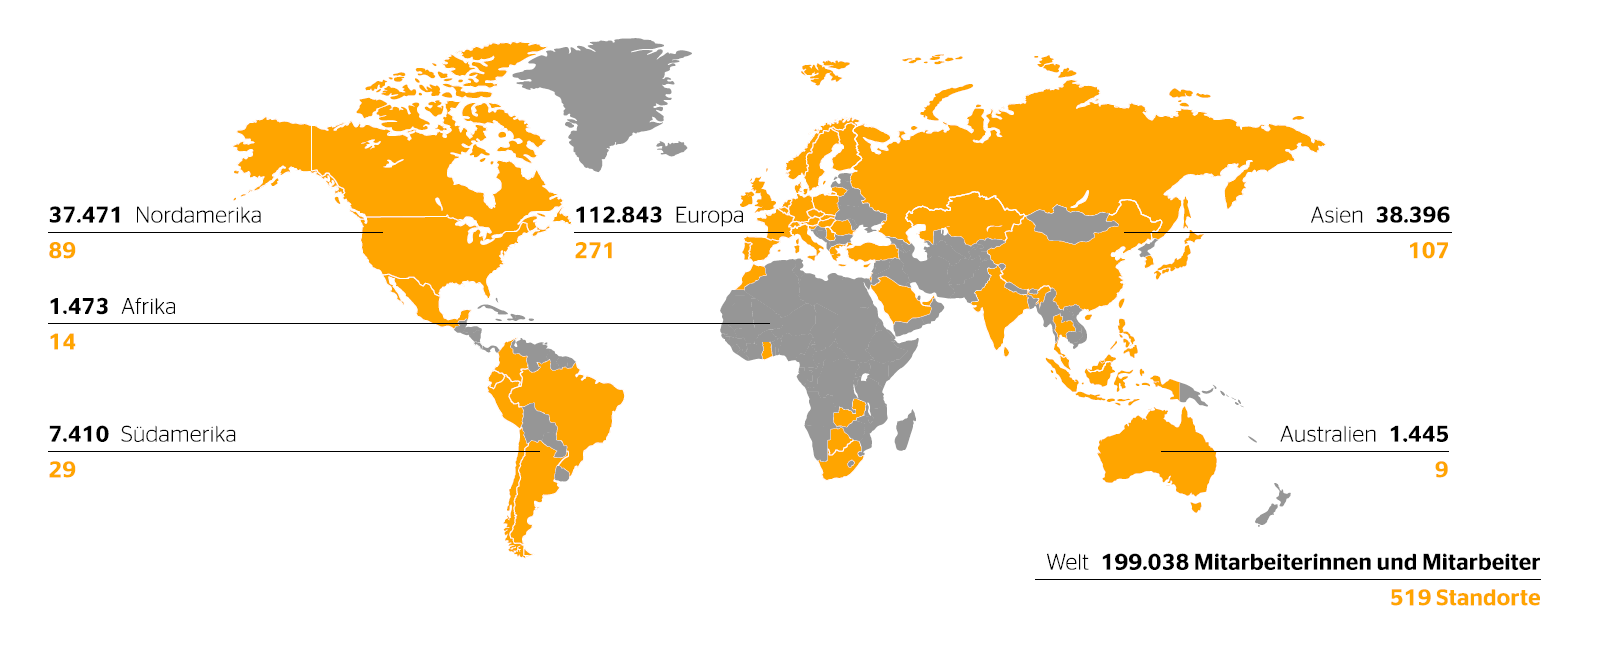 519 Standorte in 57 Ländern und Märkten